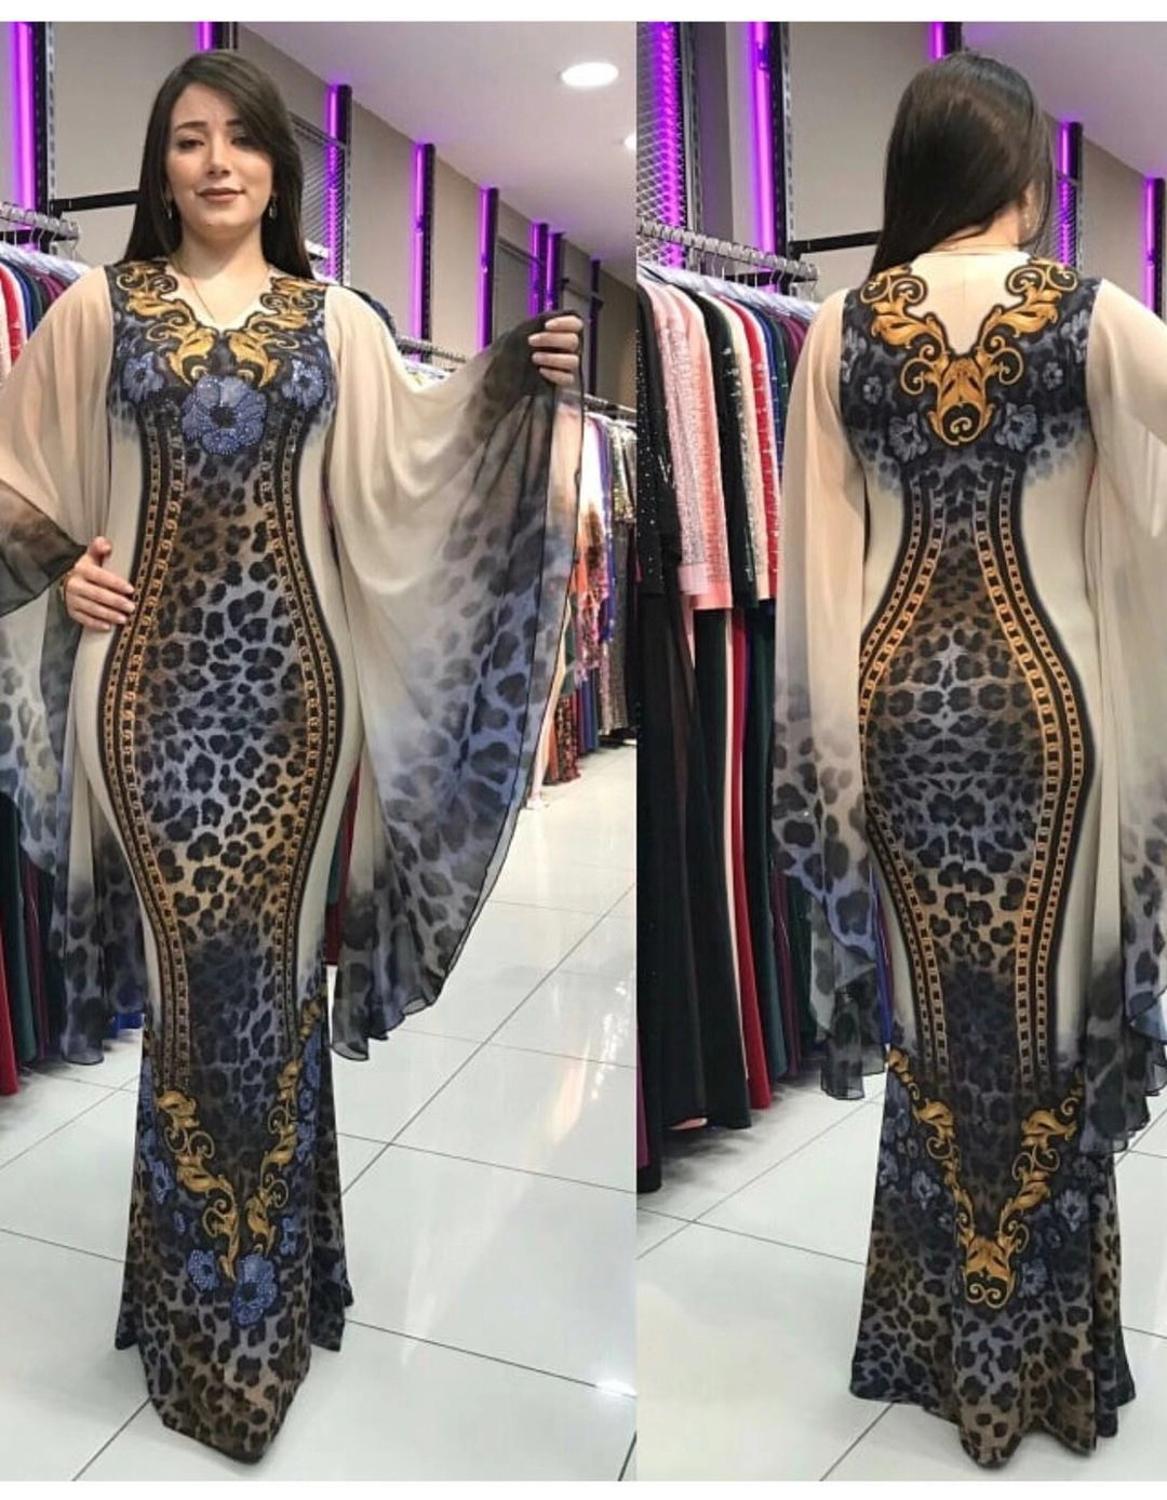 Hgte Robe En Queue De Poisson A Imprime Leopard Pour Femmes Belle Robe Africaine Retro Pour Fete D Anniversaire Grande Taille L Xl 2xl Mode Femme Ventelh